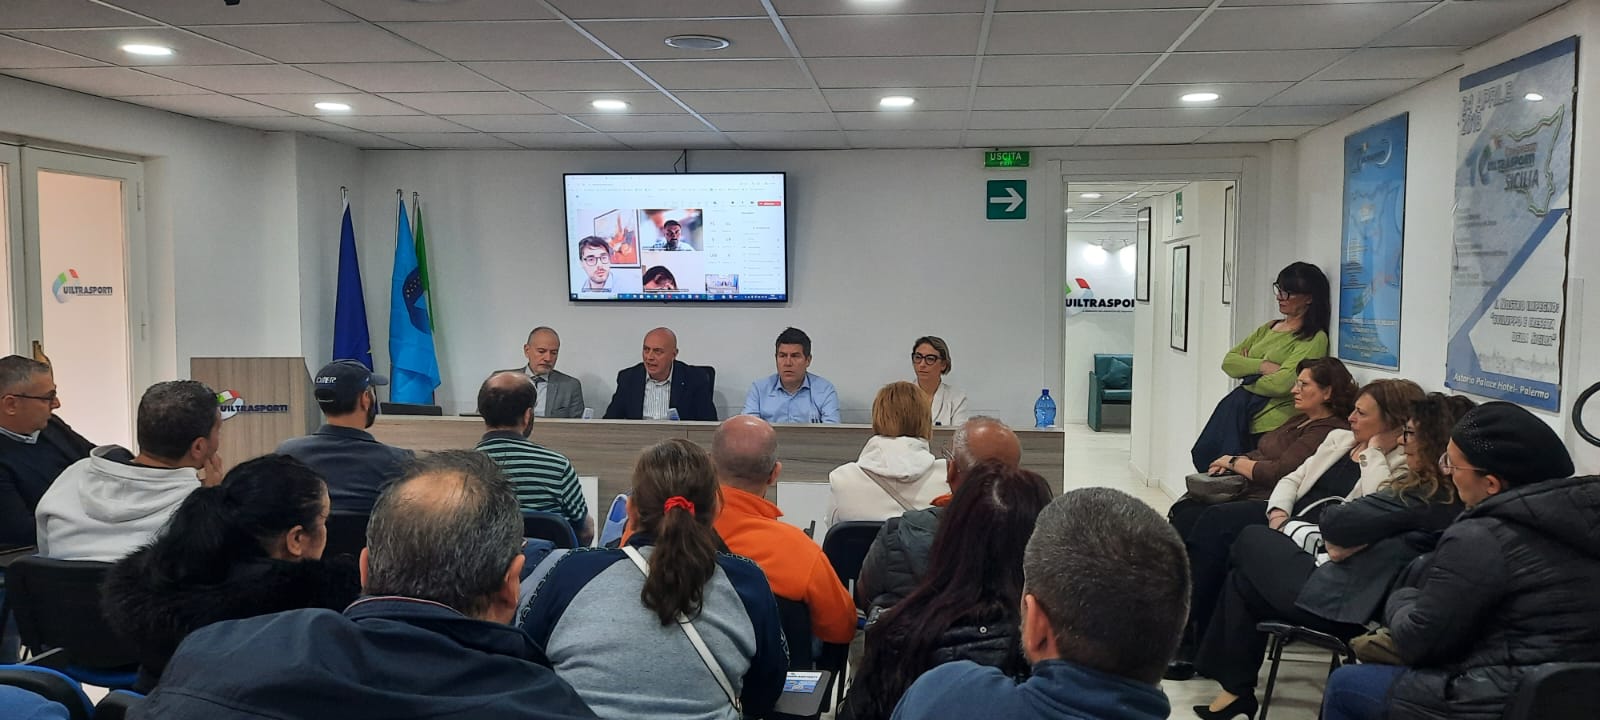 Attivo Regionale del Comparto Multiservizi, a Palermo: “Ridare dignità ad un settore bistrattato che è l’anima del Paese”